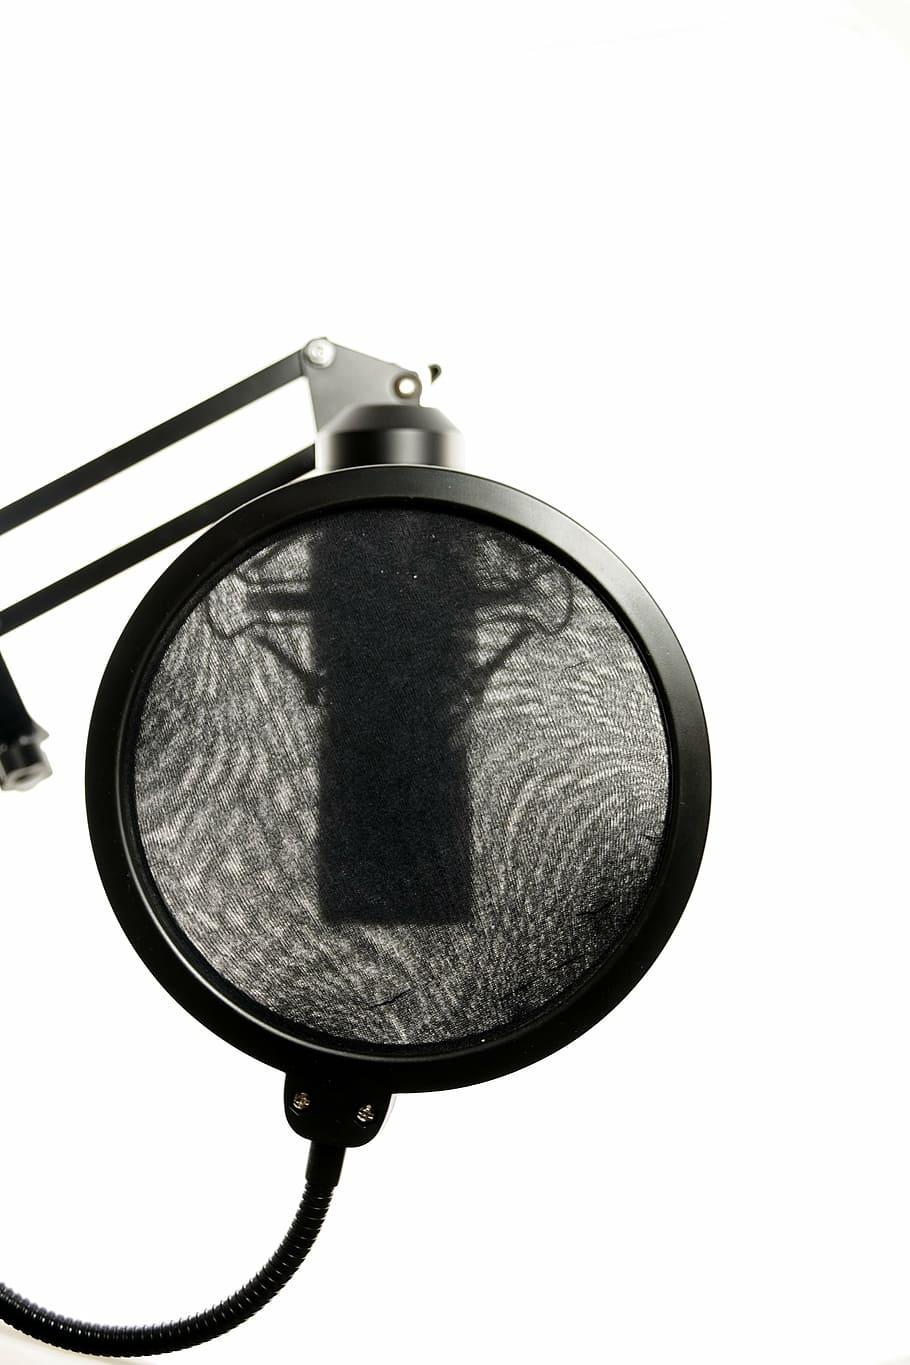 black, pop filter, attached, condenser microphone, studio, microphone, vocal microphone, audio, recording, sound studio